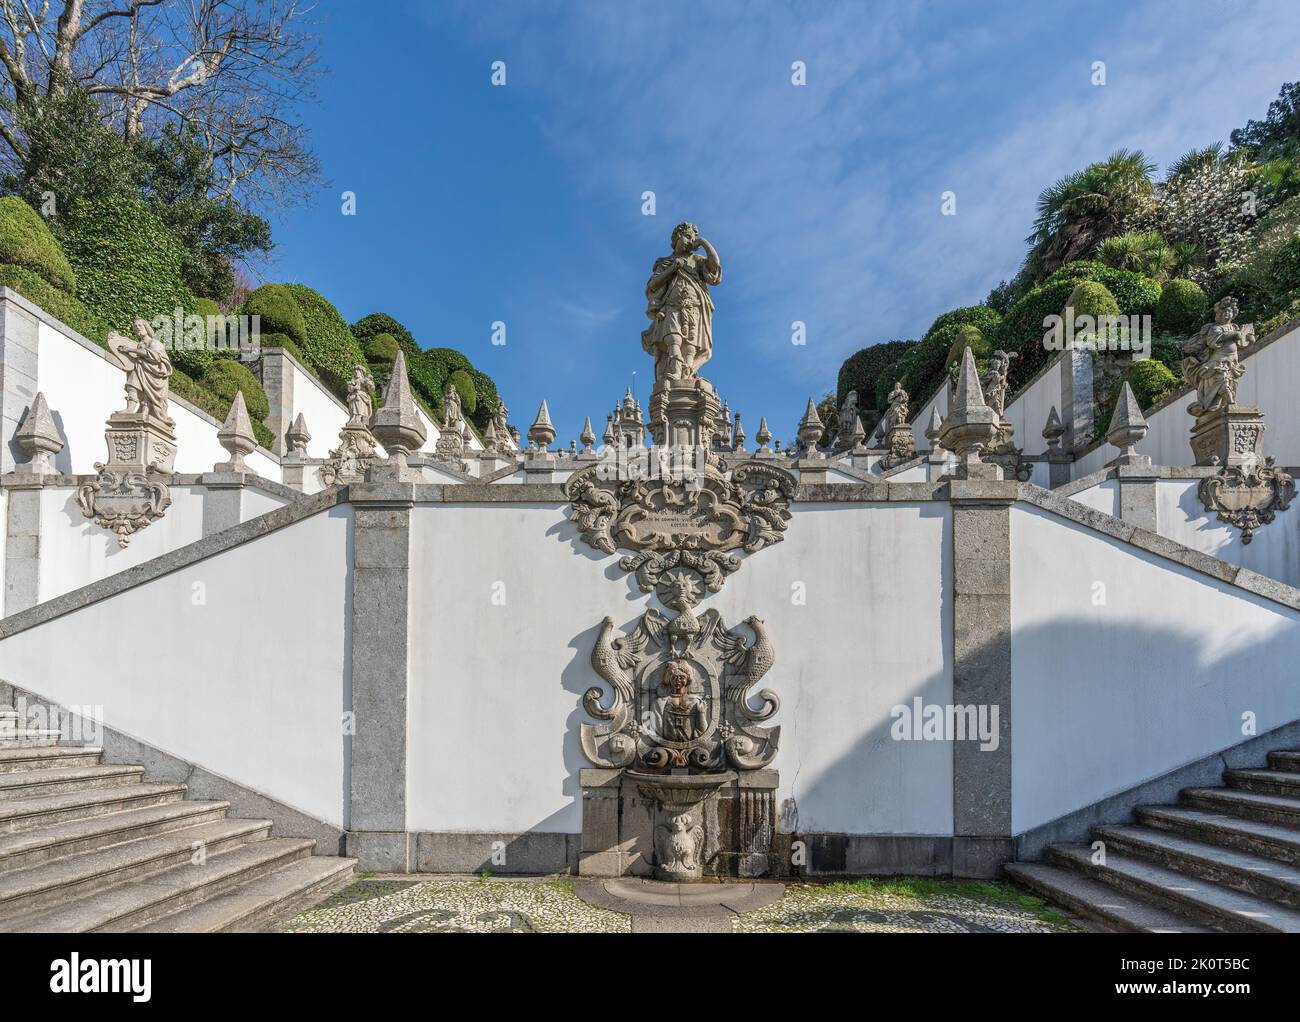 Fontana di Vista e Statua di Vir Prusens presso la scala dei cinque sensi del Santuario di Bom Jesus do Monte - Braga, Portogallo Foto Stock